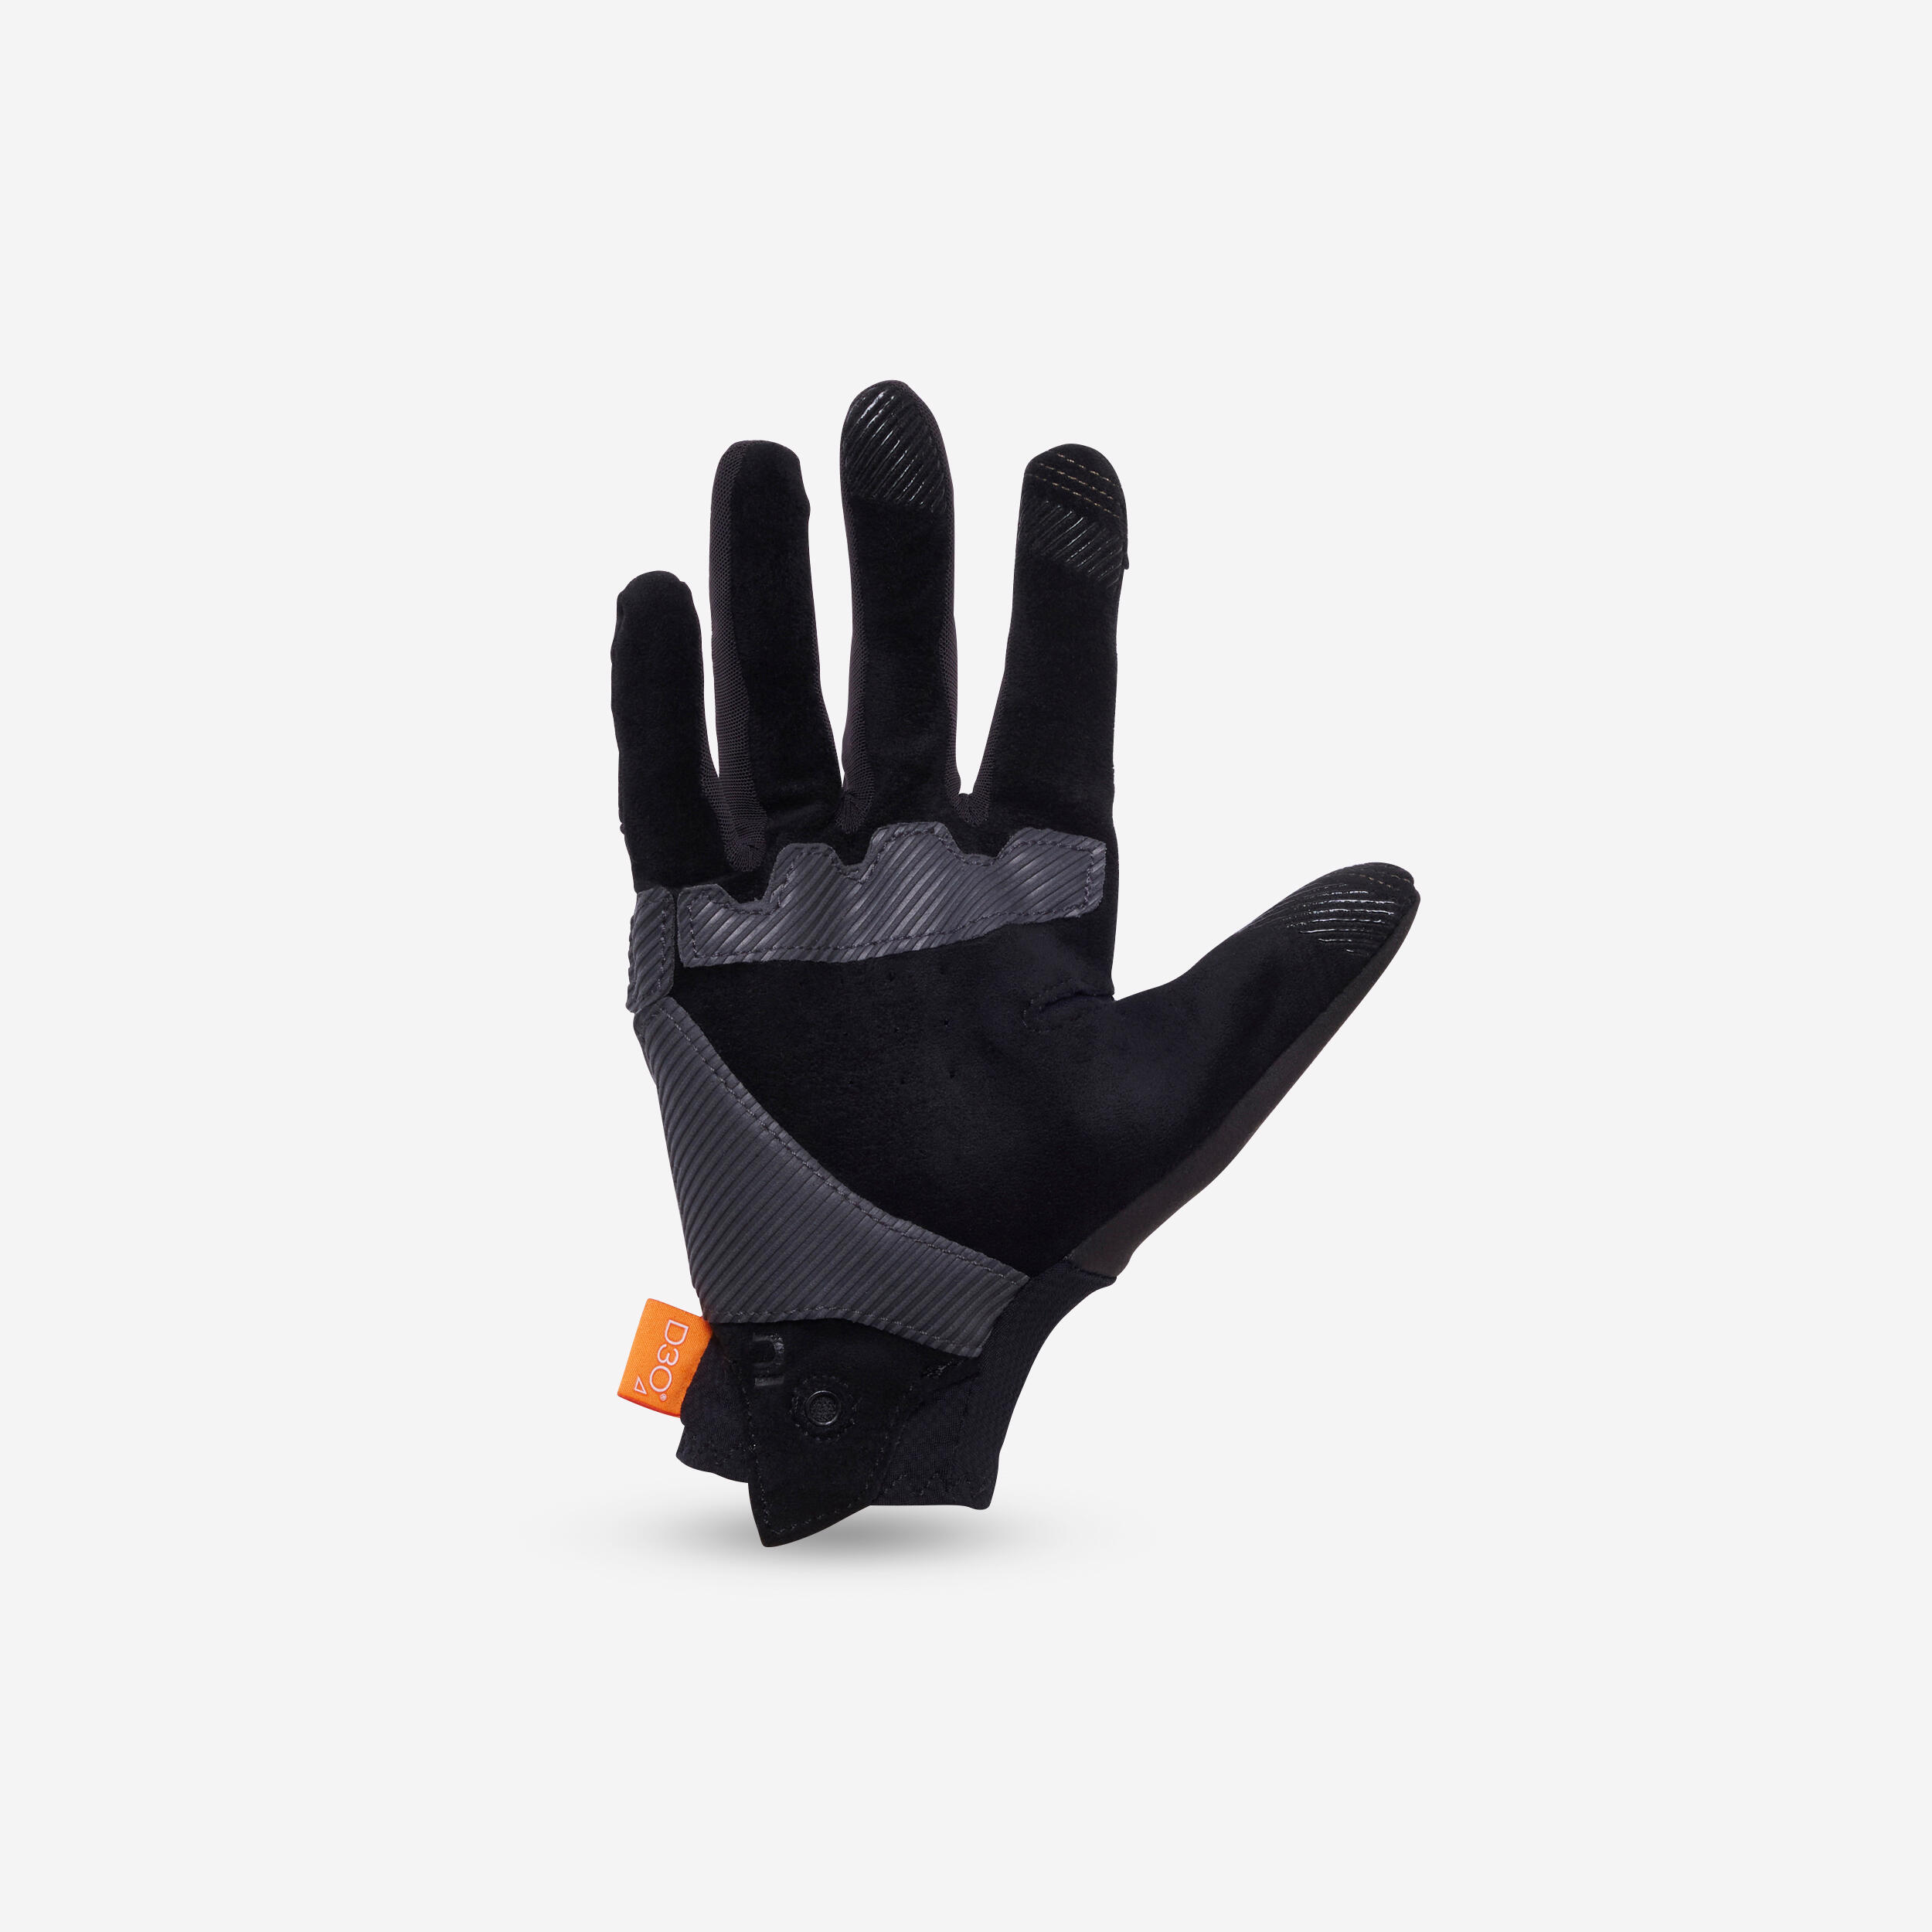 All Mountain Mountain Bike Gloves - Black 5/10